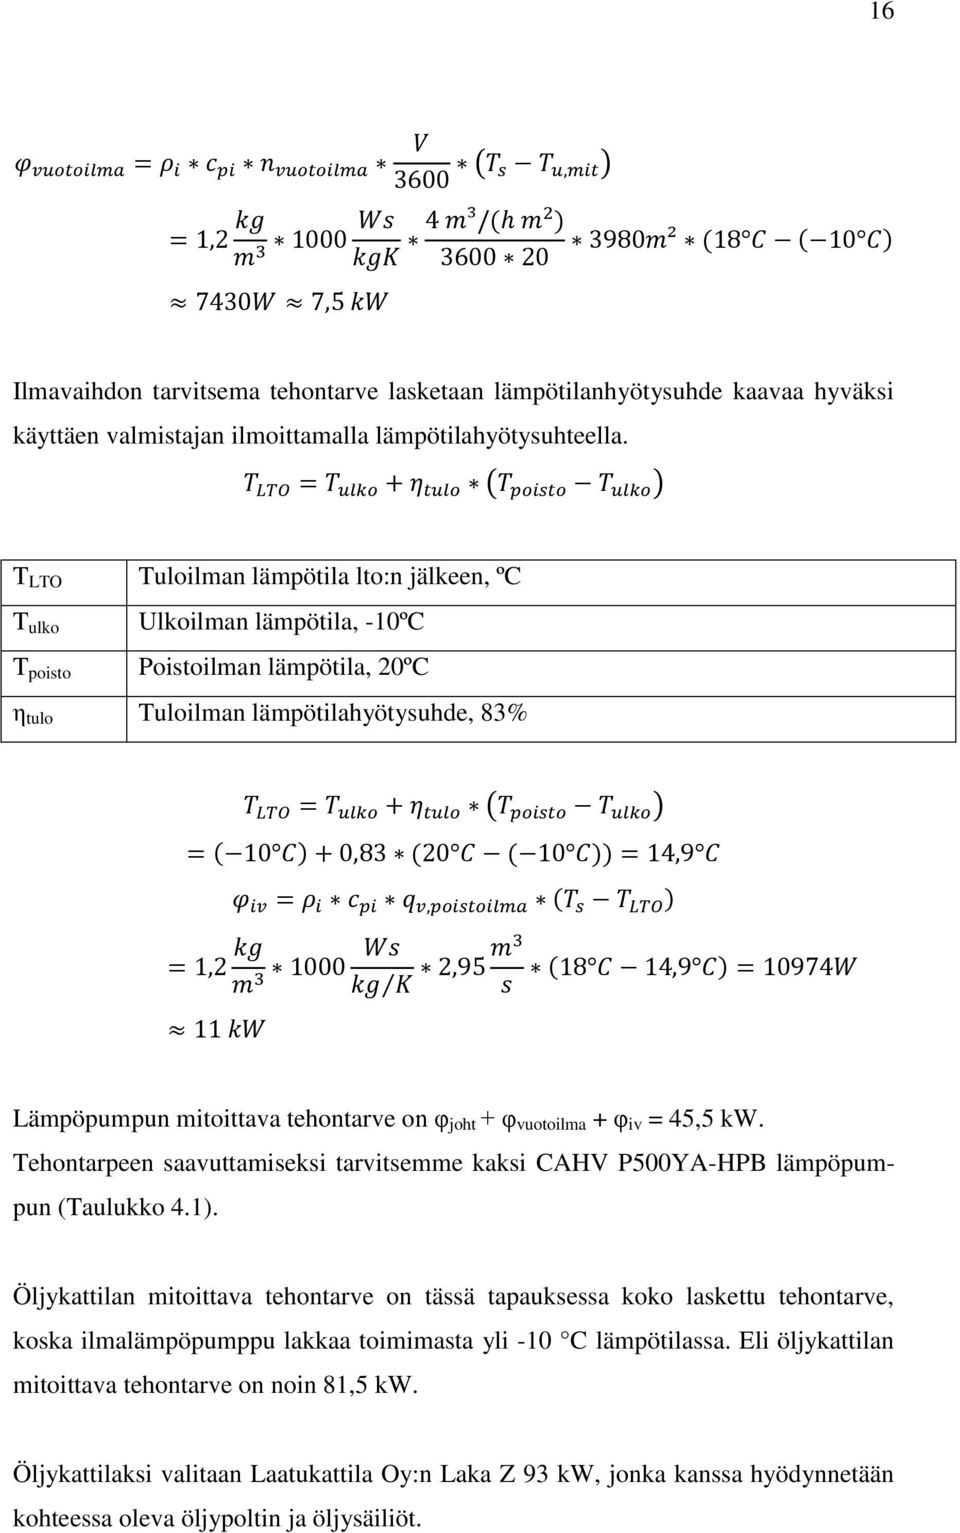 joht + φ vuotoilma + φ iv = 45,5 kw. Tehontarpeen saavuttamiseksi tarvitsemme kaksi CAHV P500YA-HPB lämpöpumpun (Taulukko 4.1).